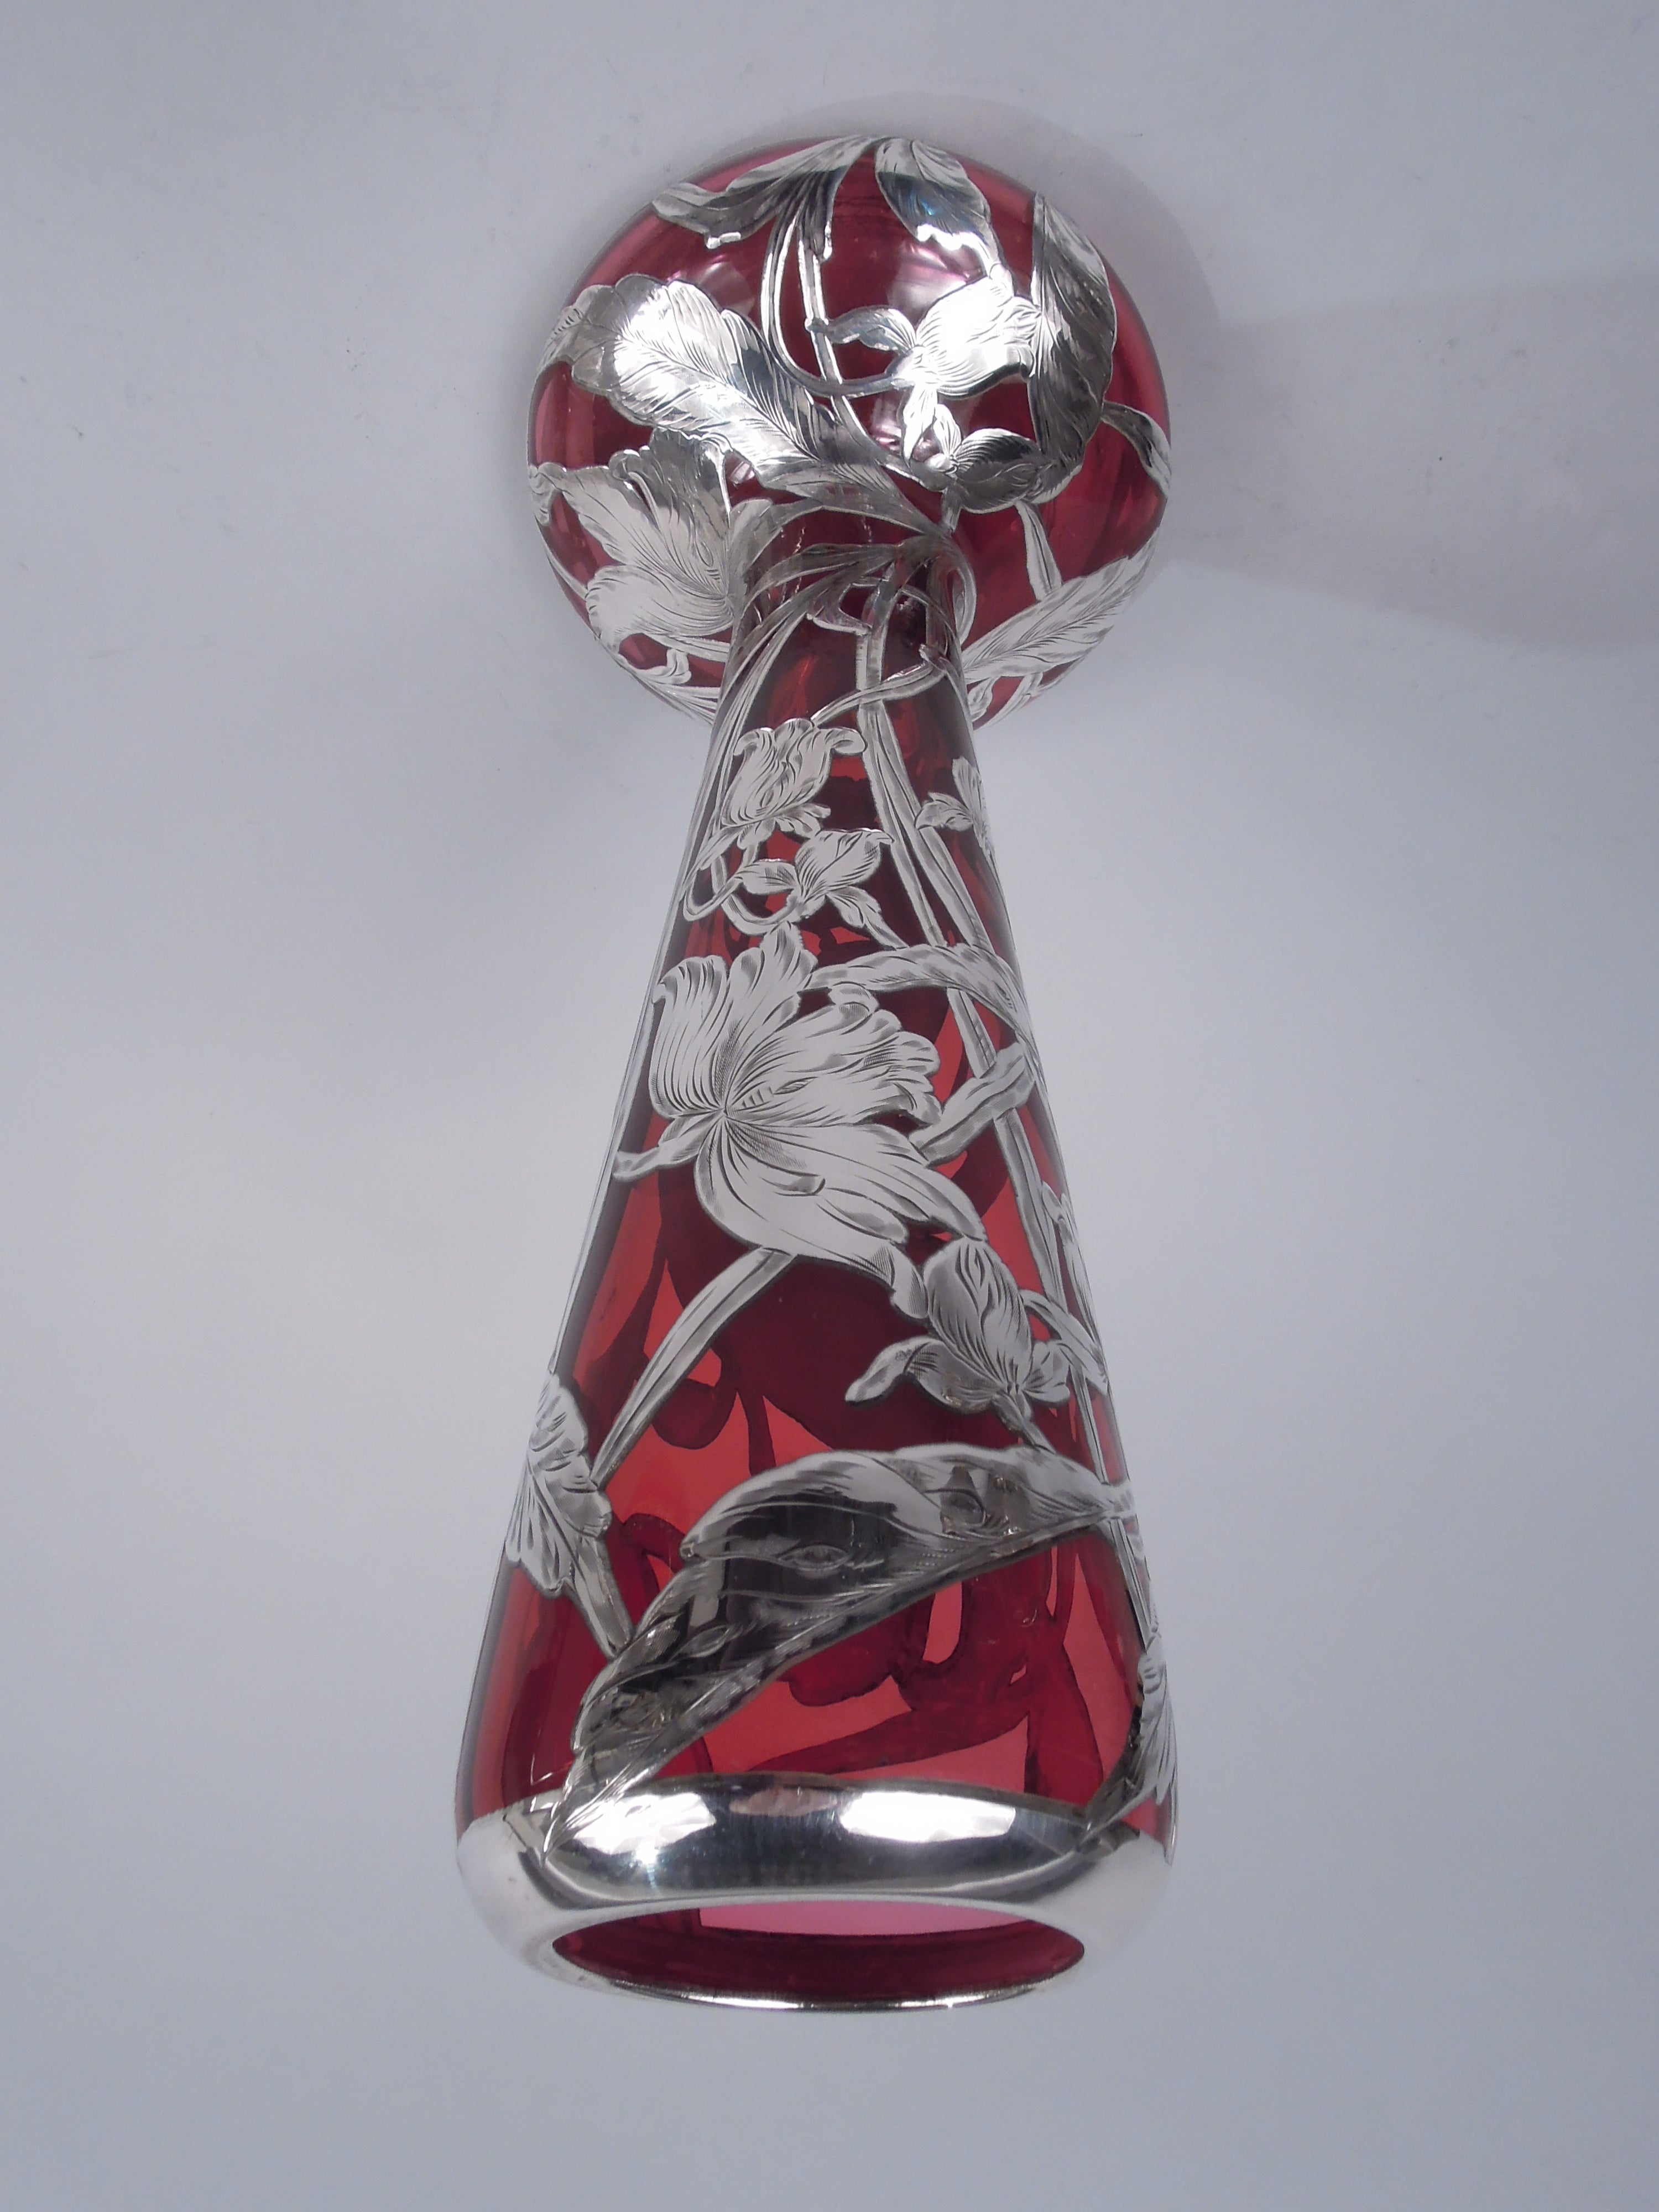 Amerikanische Jugendstil-Glasvase mit graviertem Silberüberfang, um 1900. Hoher und spitz zulaufender Hals mit eingedrehtem Mundrand in Silberkragen. Breite und bauchige Schale. Überlagerung in Form von windgepeitschten Blüten und verschlungenen und